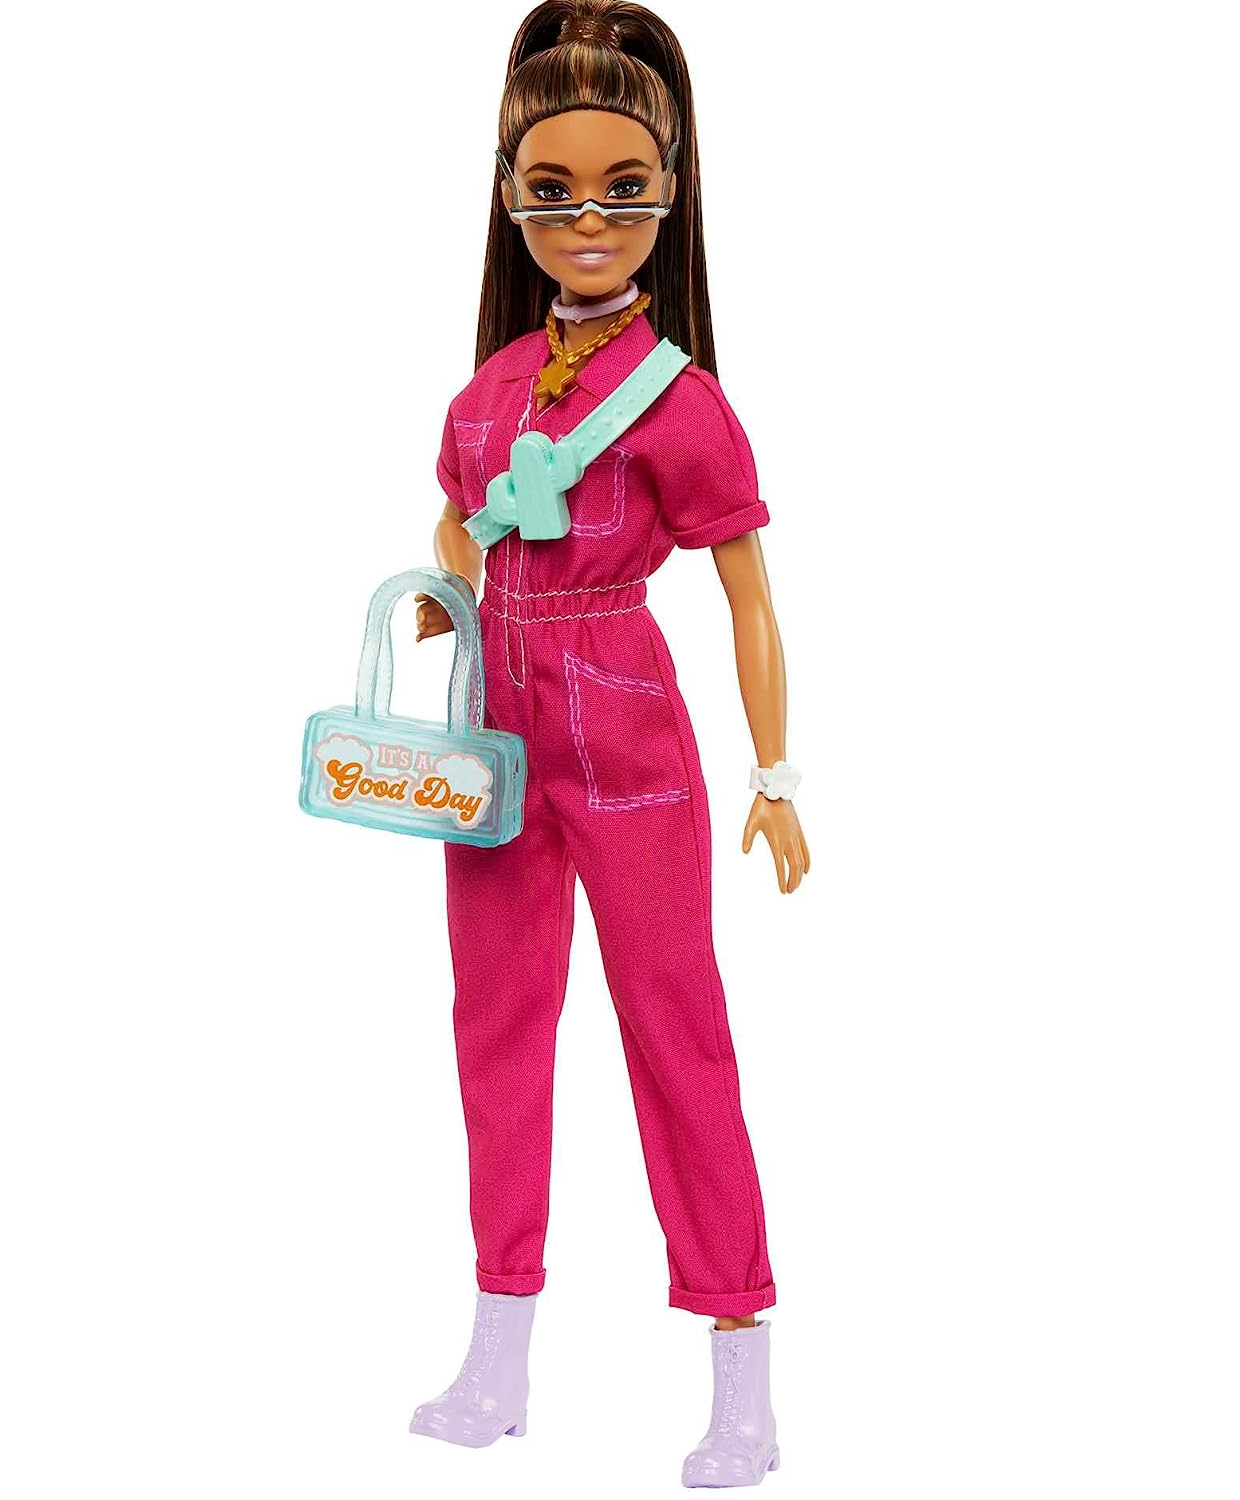 Roupa para boneca Barbie - macacão em croche